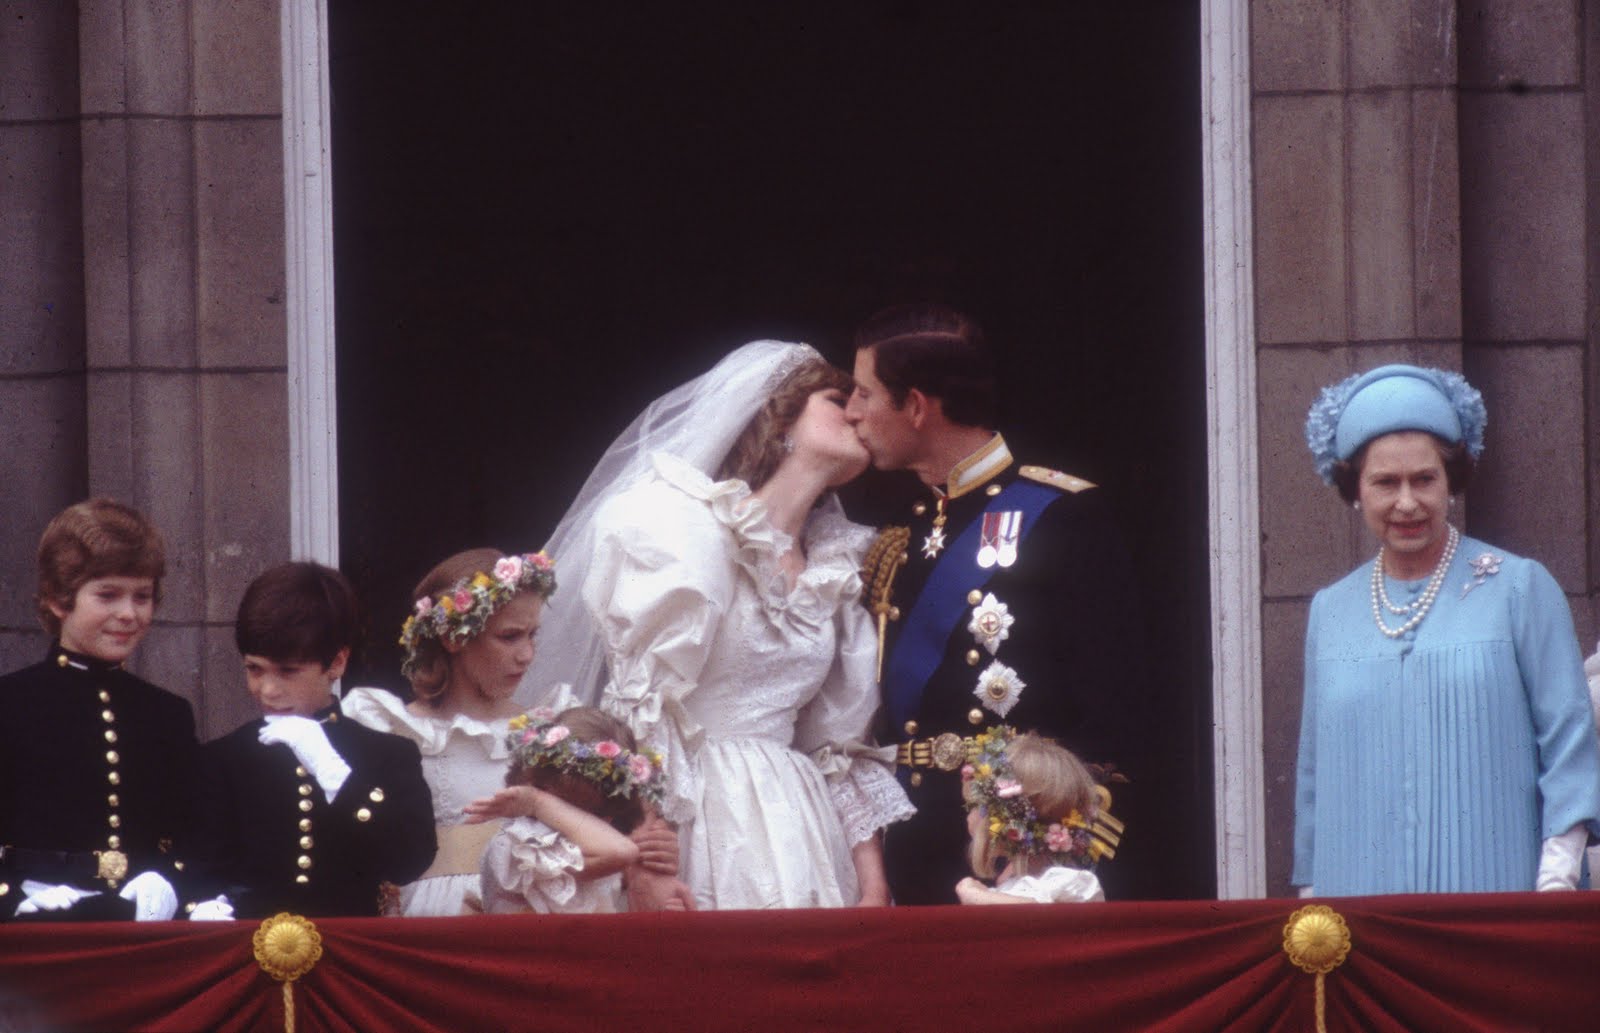 http://3.bp.blogspot.com/-38Et3lW1tq0/TbX6pmdAm0I/AAAAAAAABAM/mtCO0kGA8ec/s1600/1981-Charles-Diana-balcony-kiss-3239373.jpg